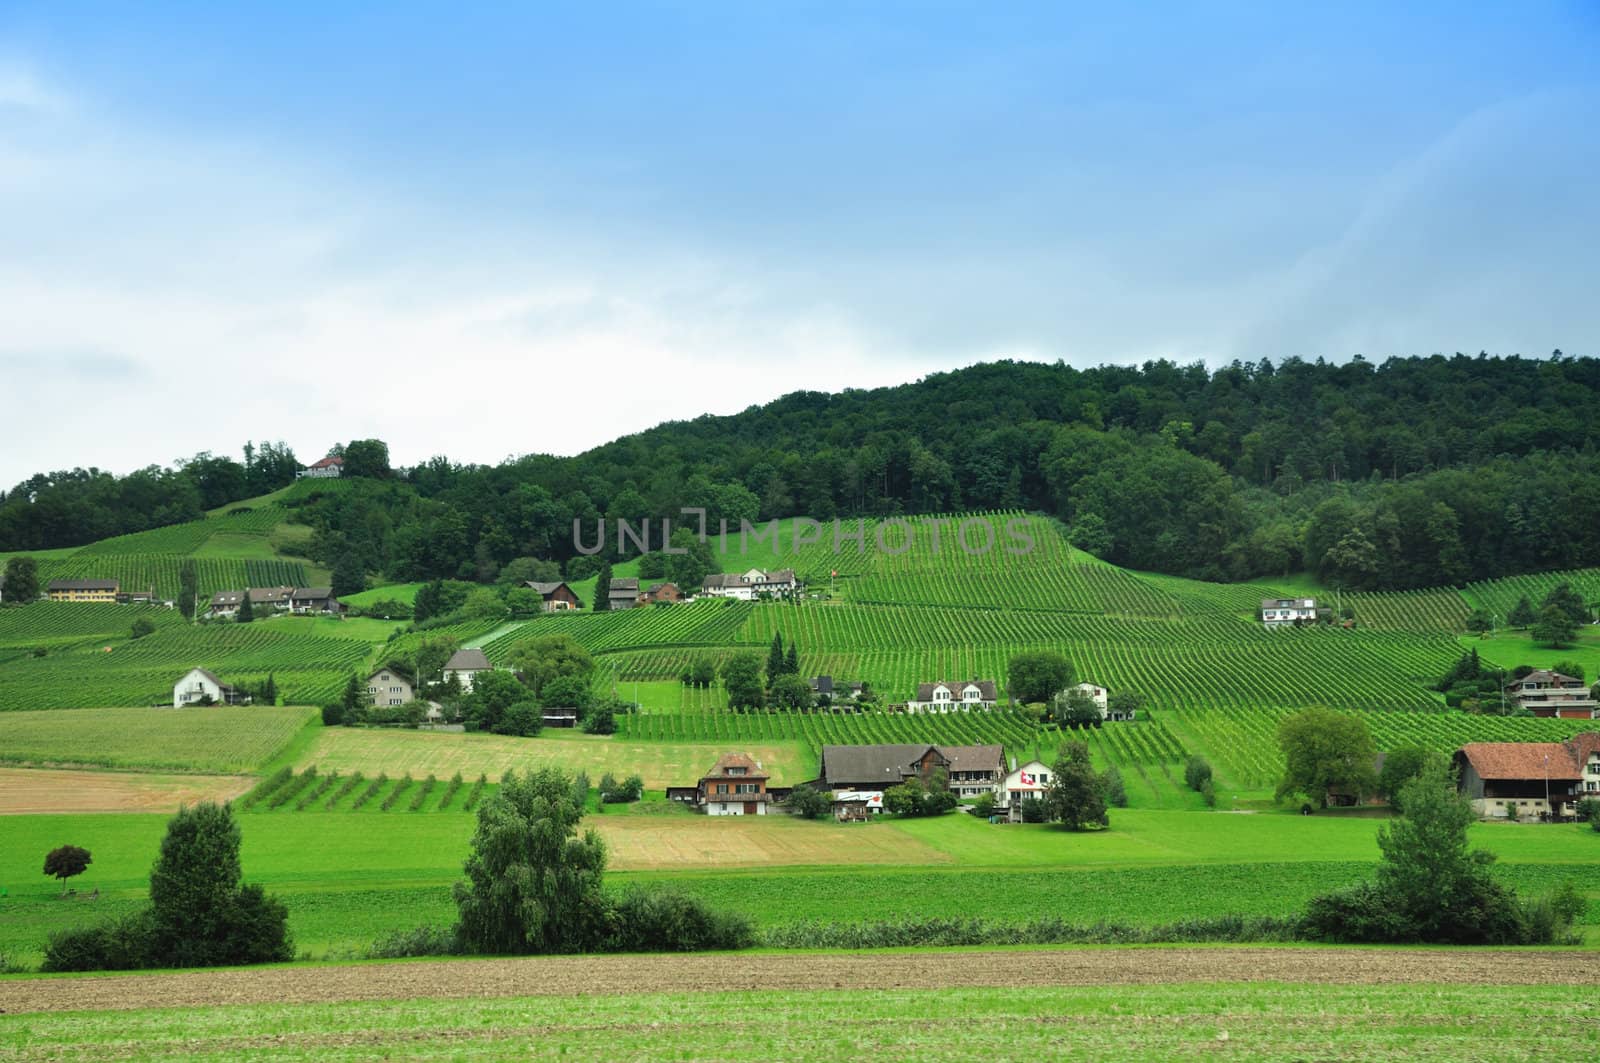 A village in Switzerland and vineyards. by lobzik